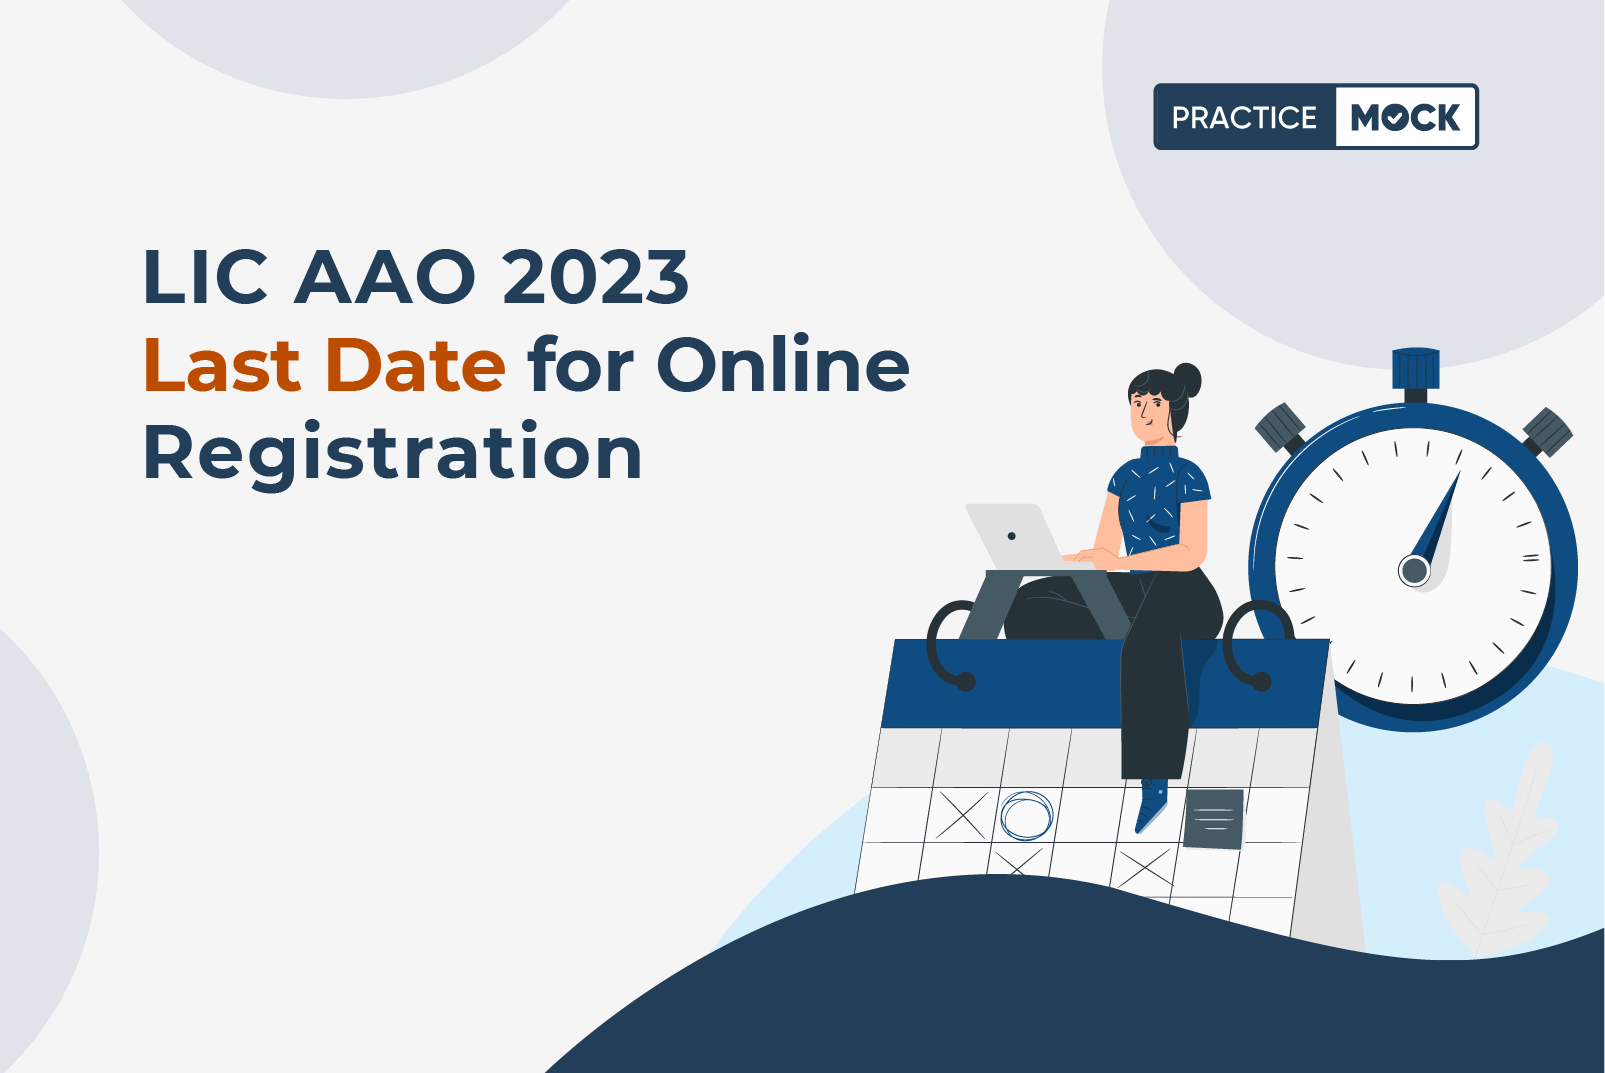 LIC AAO 2023 Last date for Online Registration PracticeMock